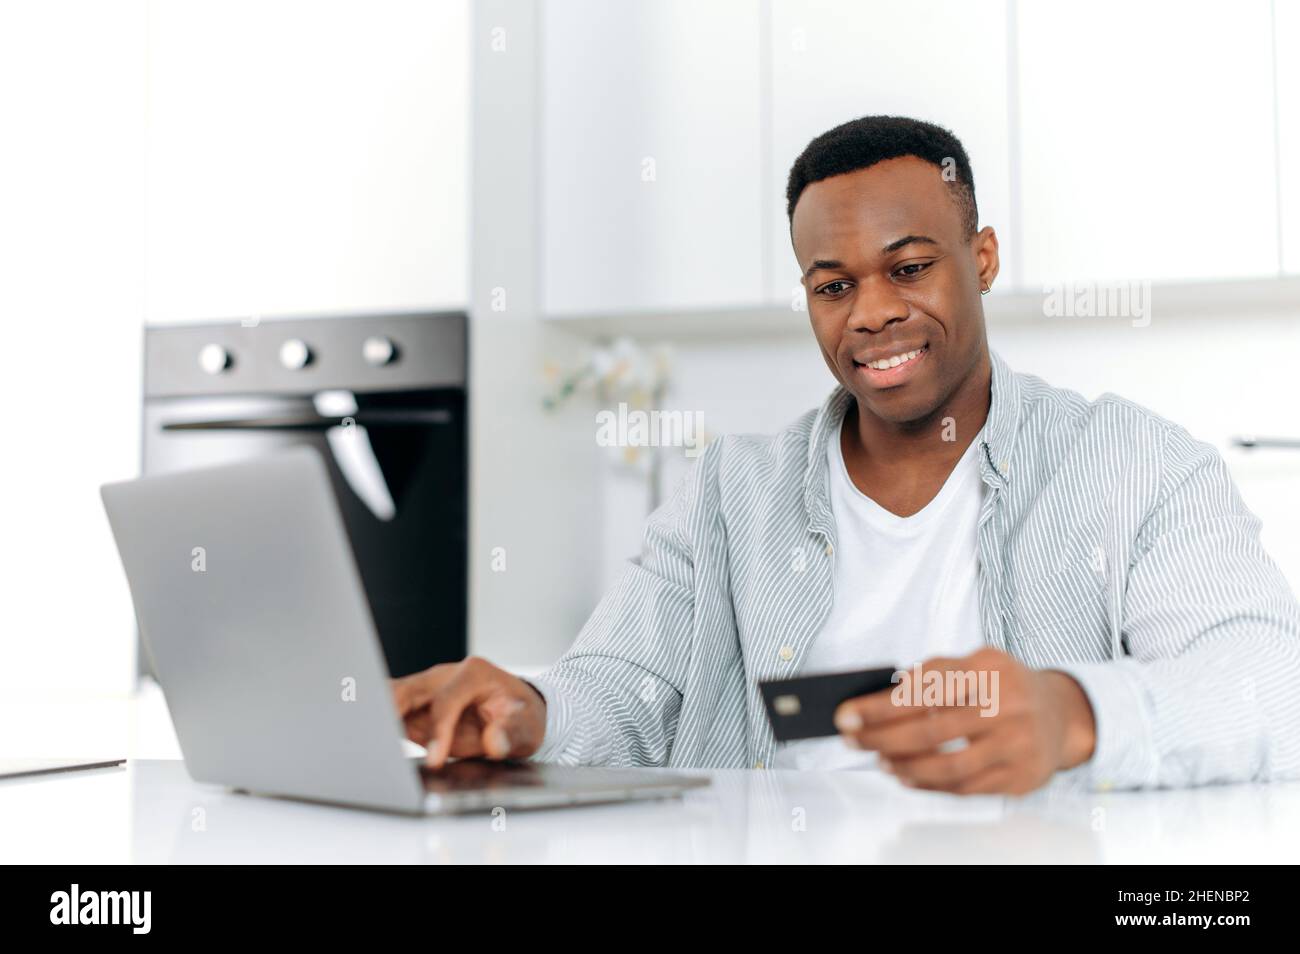 Fröhlicher schwarzer Mann sitzt in der Küche zu Hause, in lässiger Kleidung gekleidet, mit Laptop und Kreditkarte für Online-Shopping, ist die Eingabe von Daten für die Zahlung, Online-Transaktion, Bestellung nach Hause liefern, lächelt Stockfoto